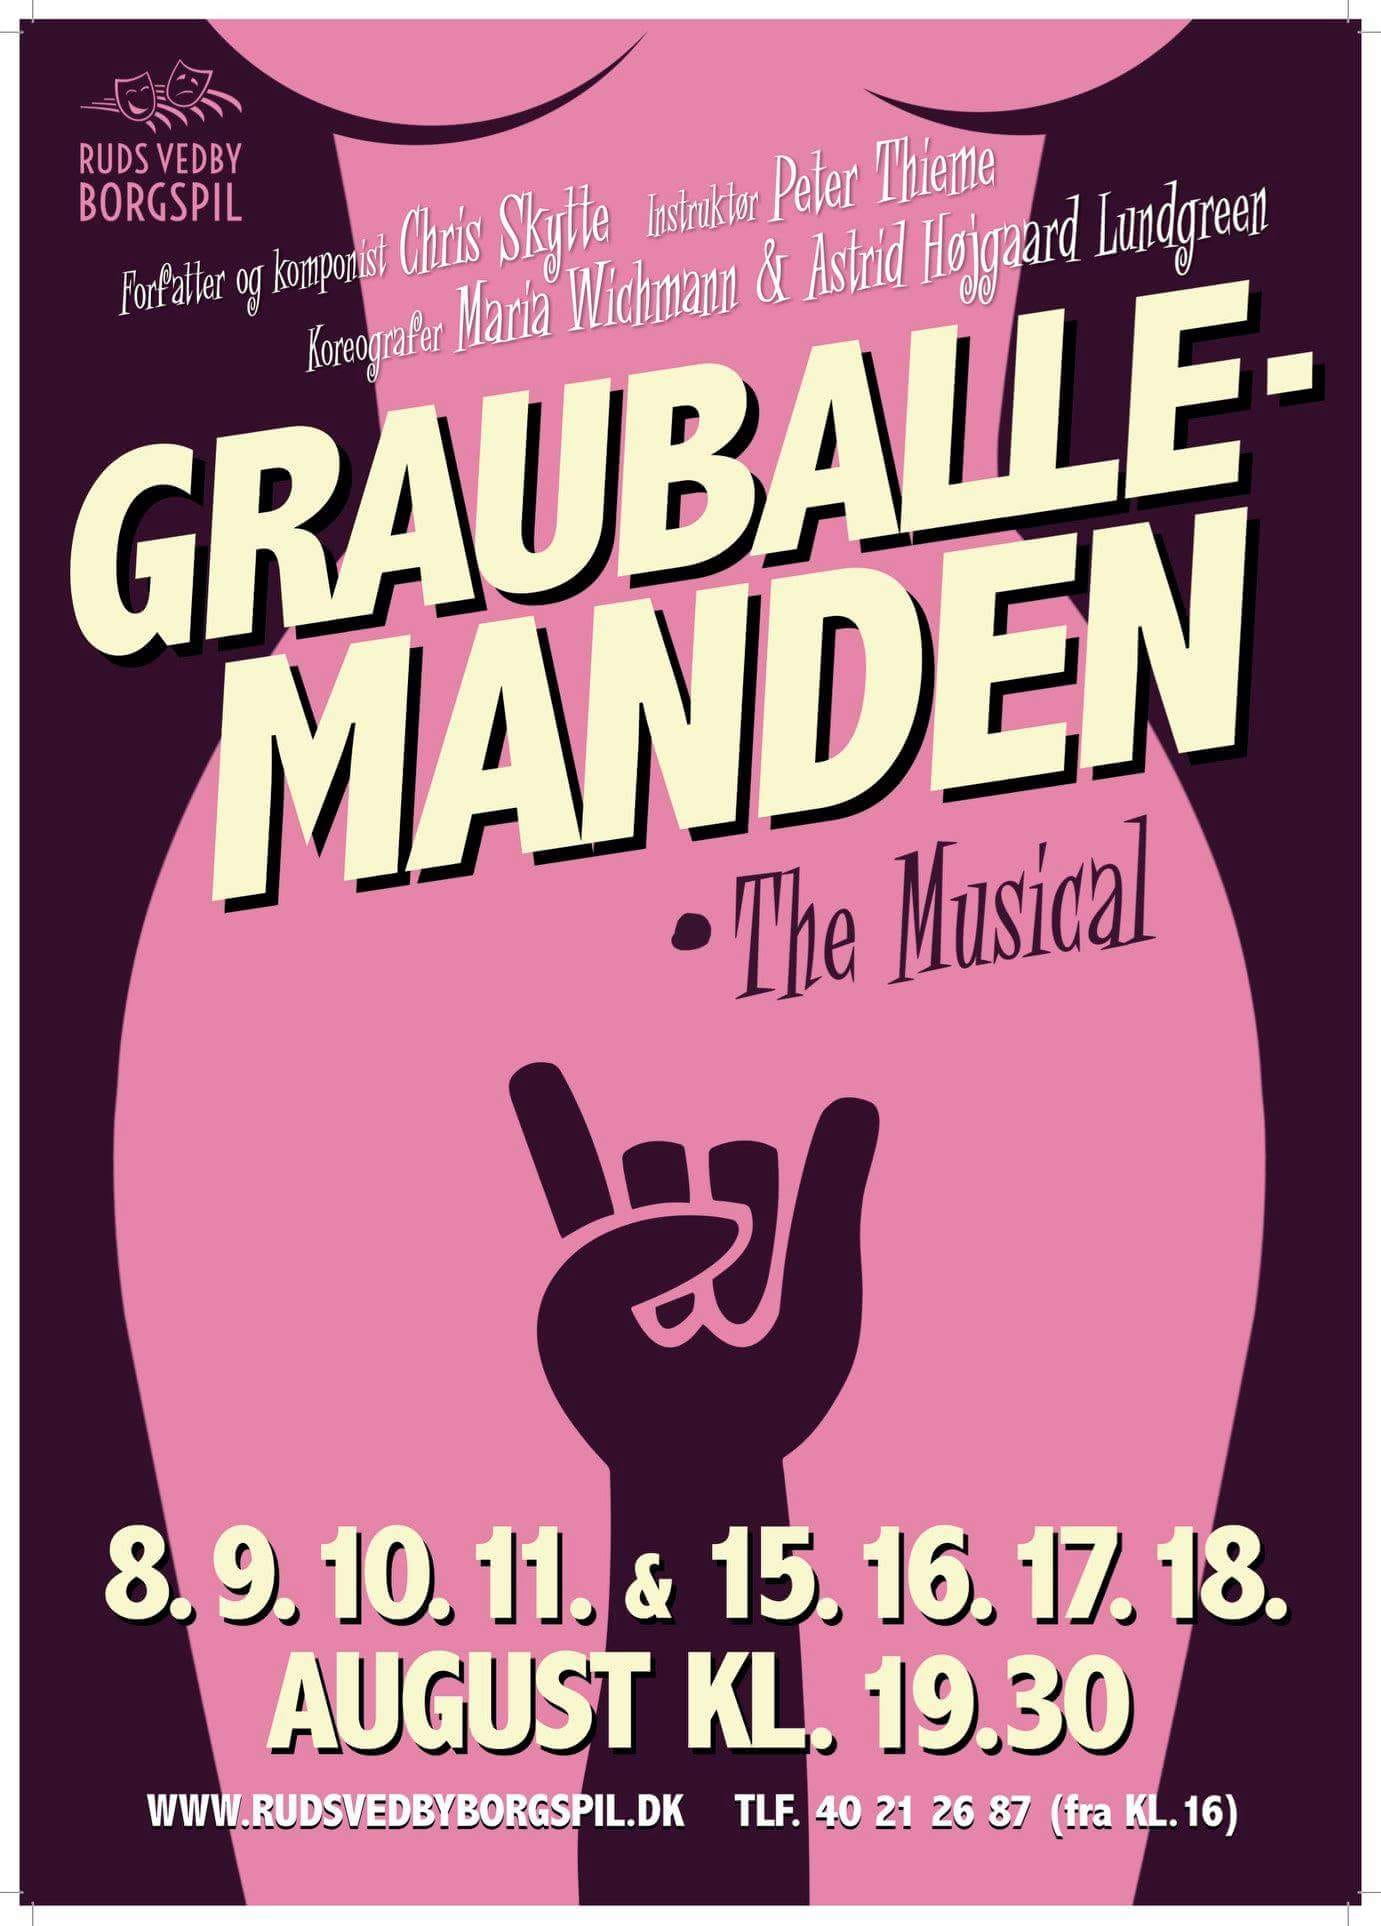 Grauballemanden - The Musical plakat